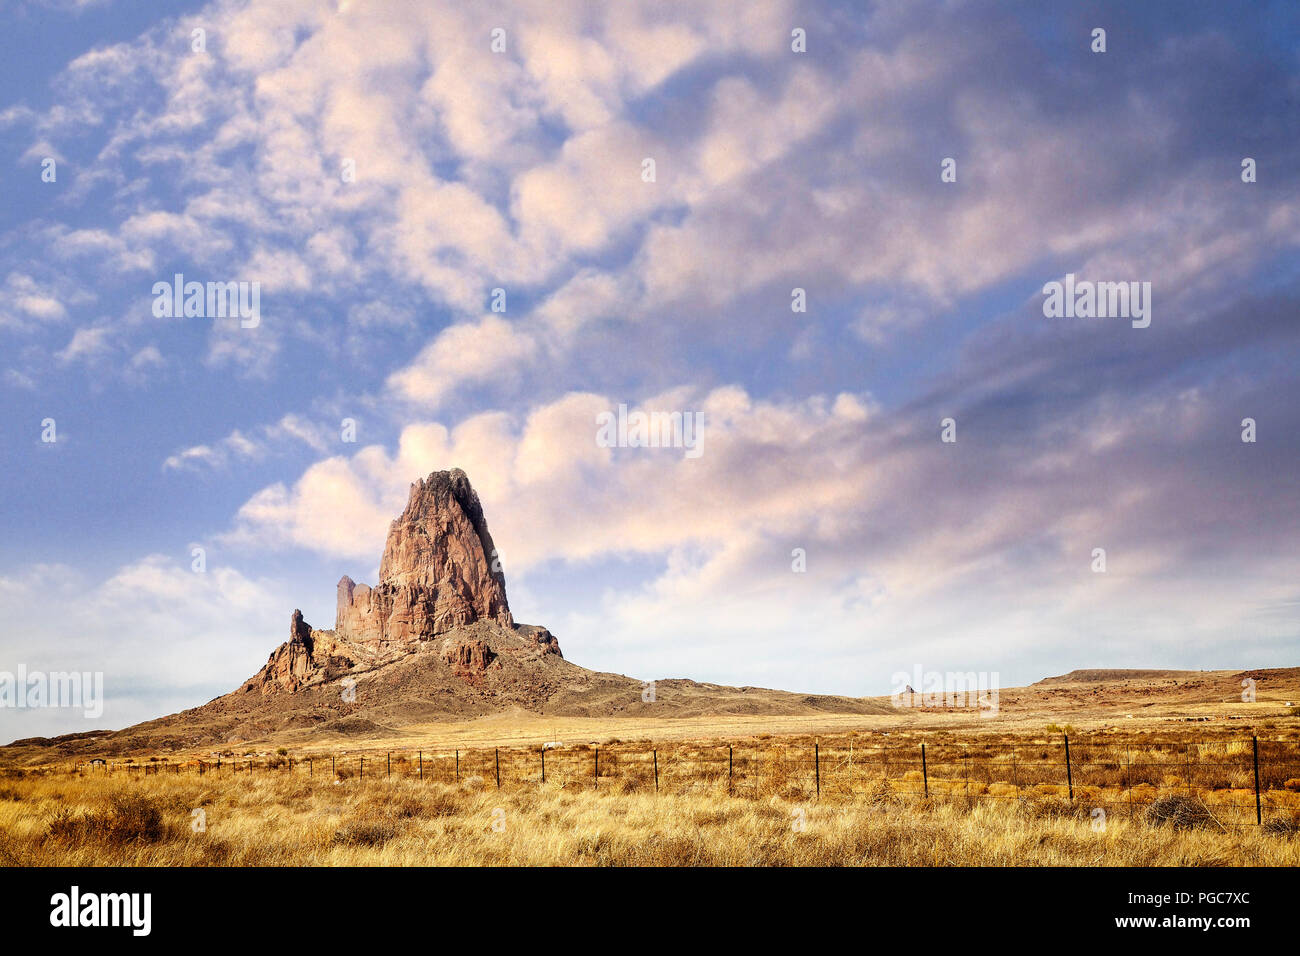 Agathla peak, un bouchon volcanique érodée au sud de Monument Valley, est considéré comme sacré par les Navajos. De l'Arizona. Banque D'Images